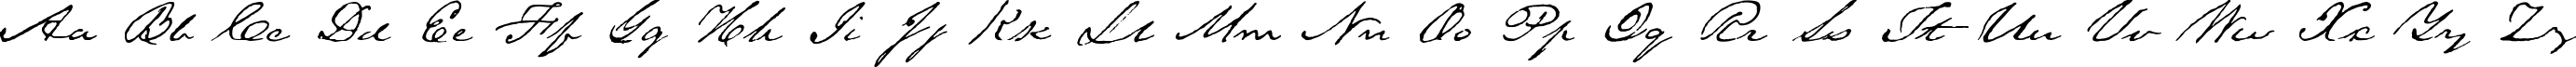 Пример написания английского алфавита шрифтом TexasHeroBETA Medium